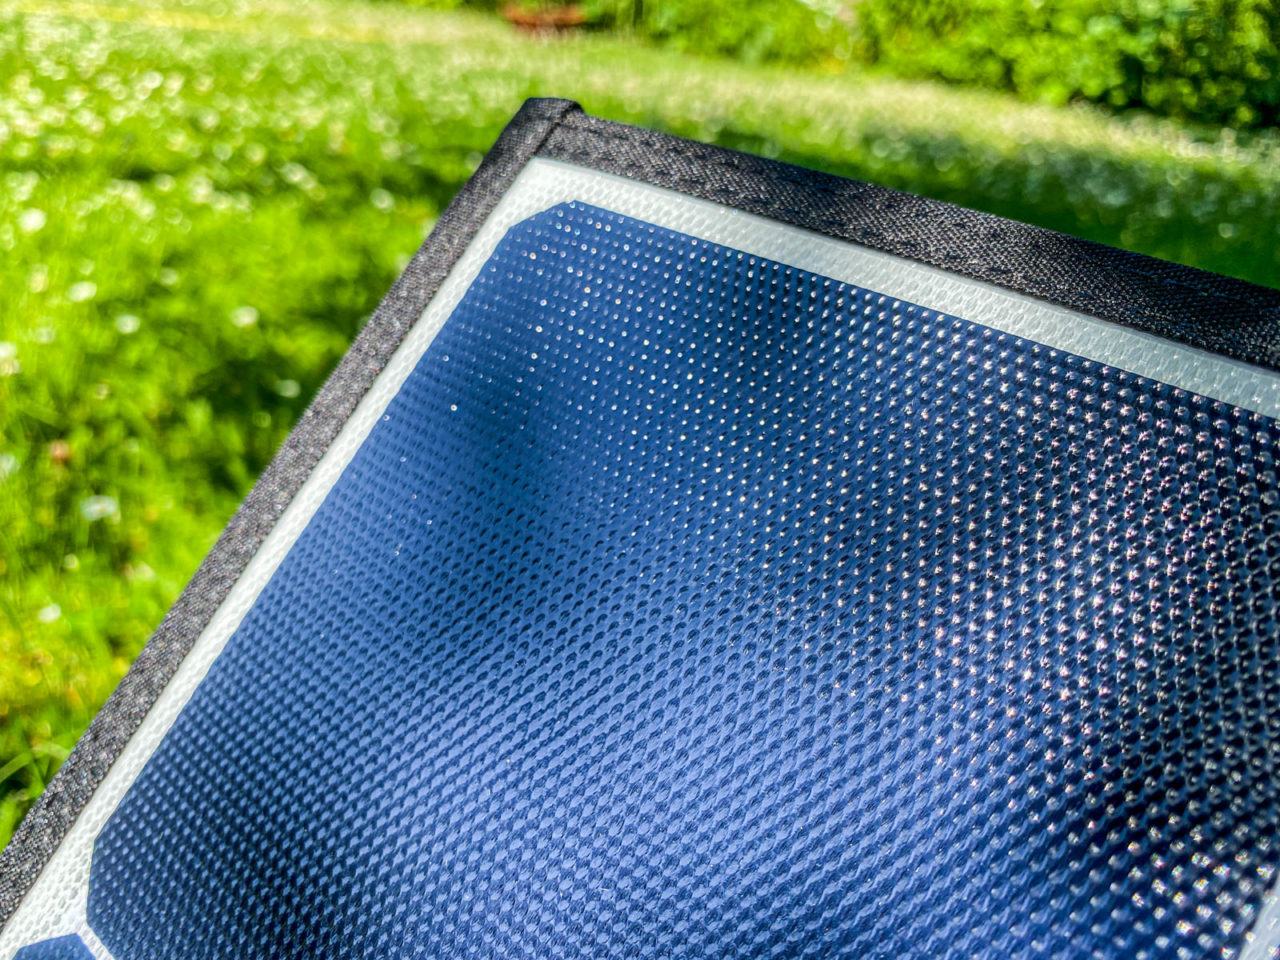 PowerOak Bluetti SP120 Solarpanel Test - Die Beschichtung ist aus ETFE-Polymer (Teflon)